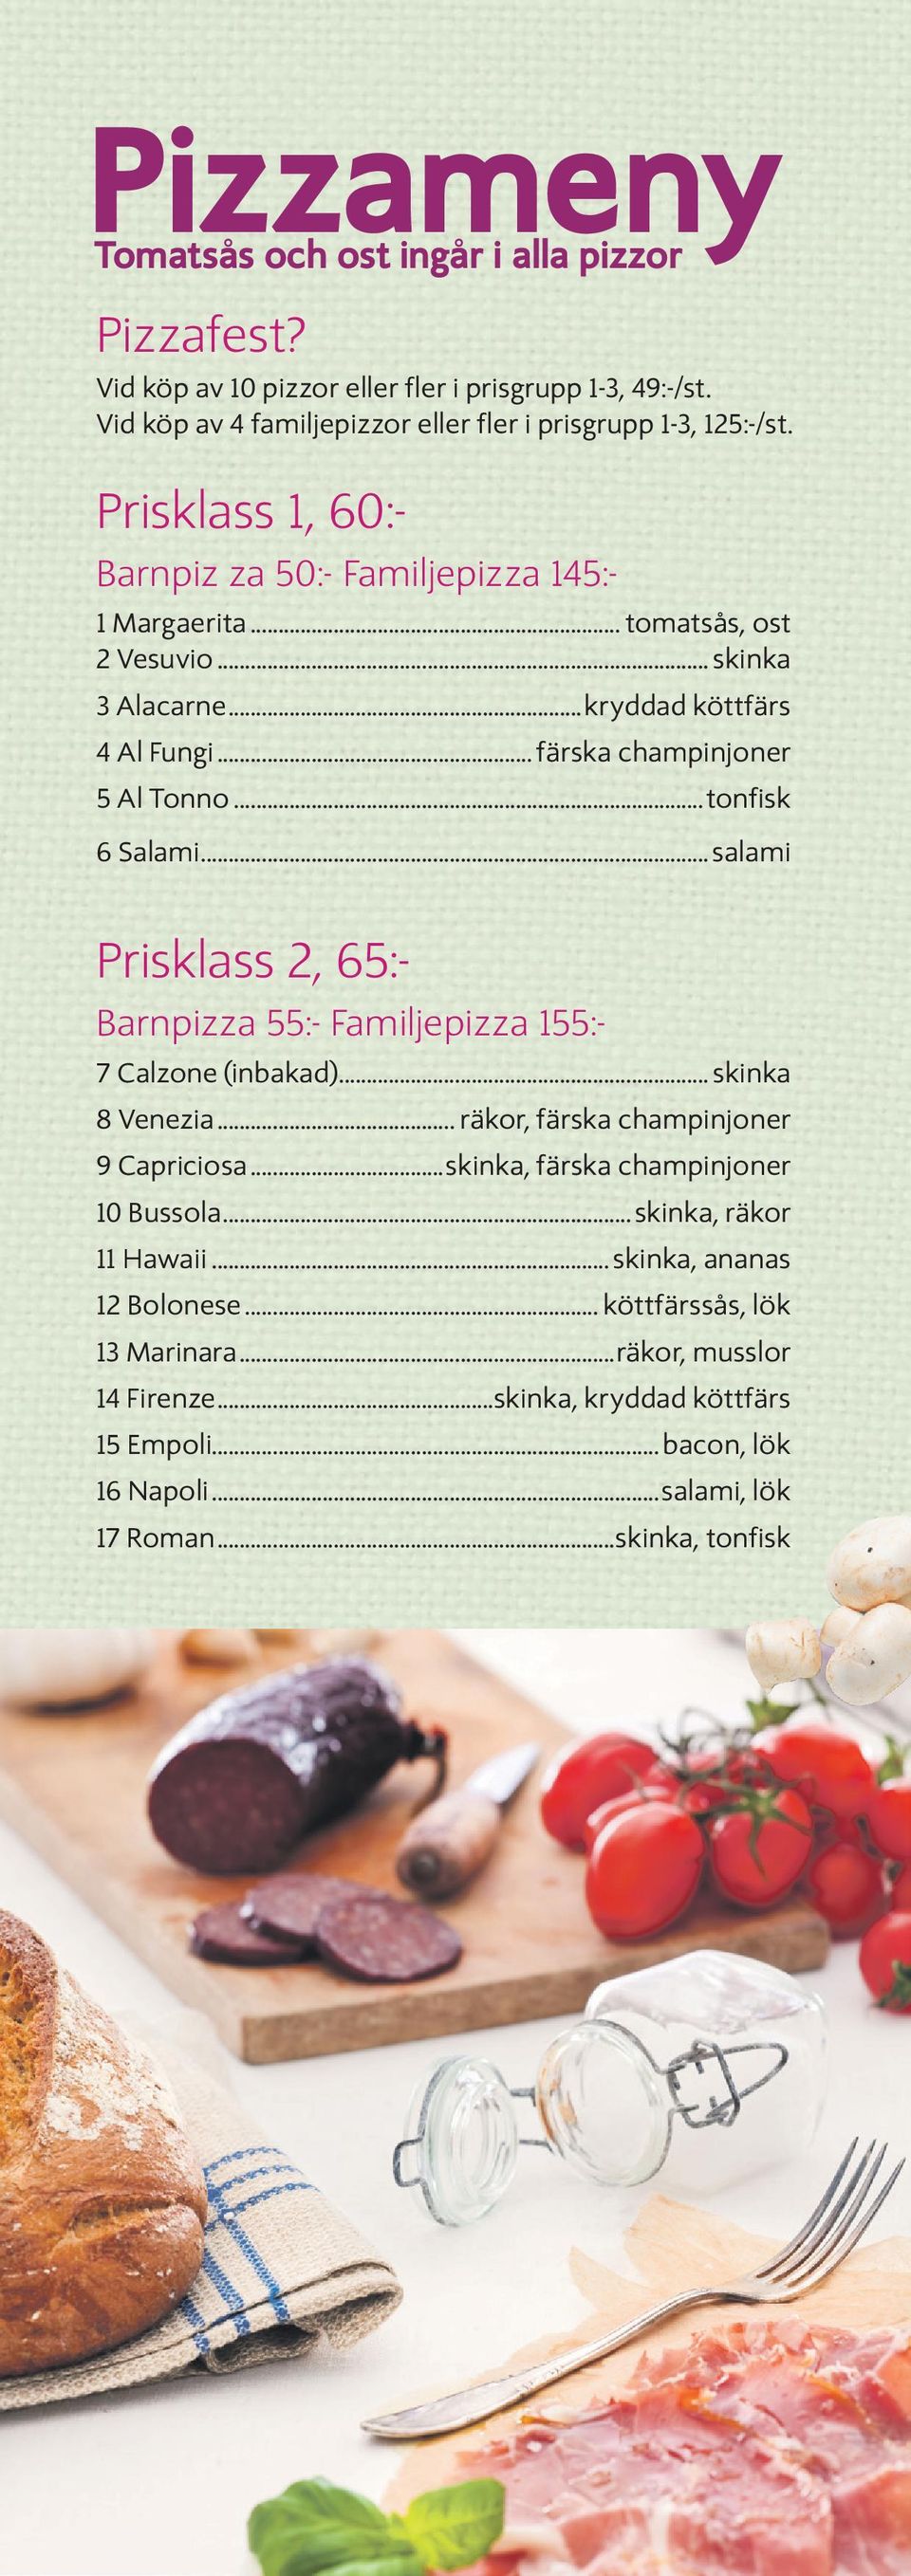 ..t o n fi s k 6 Salami...salami Prisklass 2, 65:- Barnpizza 55:- Familjepizza 155:- 7 Calzone (inbakad)... skinka 8 Venezia... räkor, färska champinjoner 9 Capriciosa.